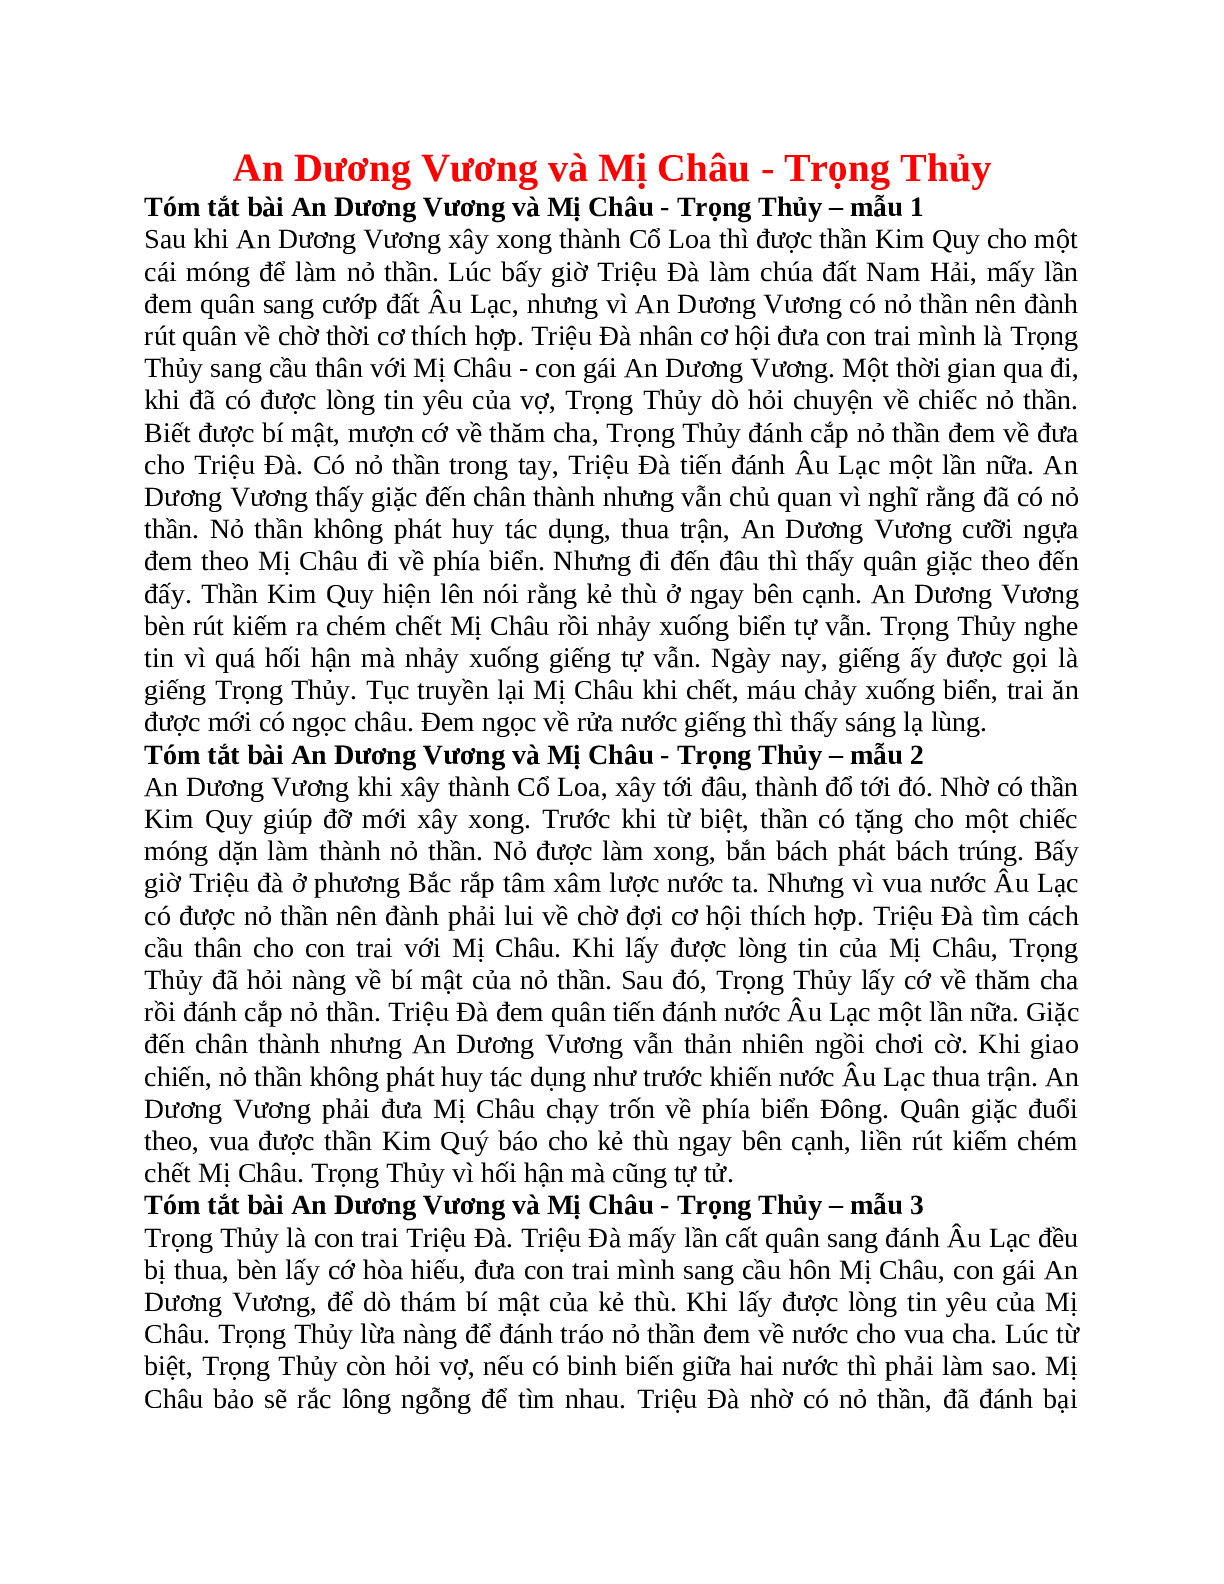 Tóm tắt An Dương Vương và Mị Châu - Trọng Thủy nhanh nhất, ngắn ngọn (trang 1)